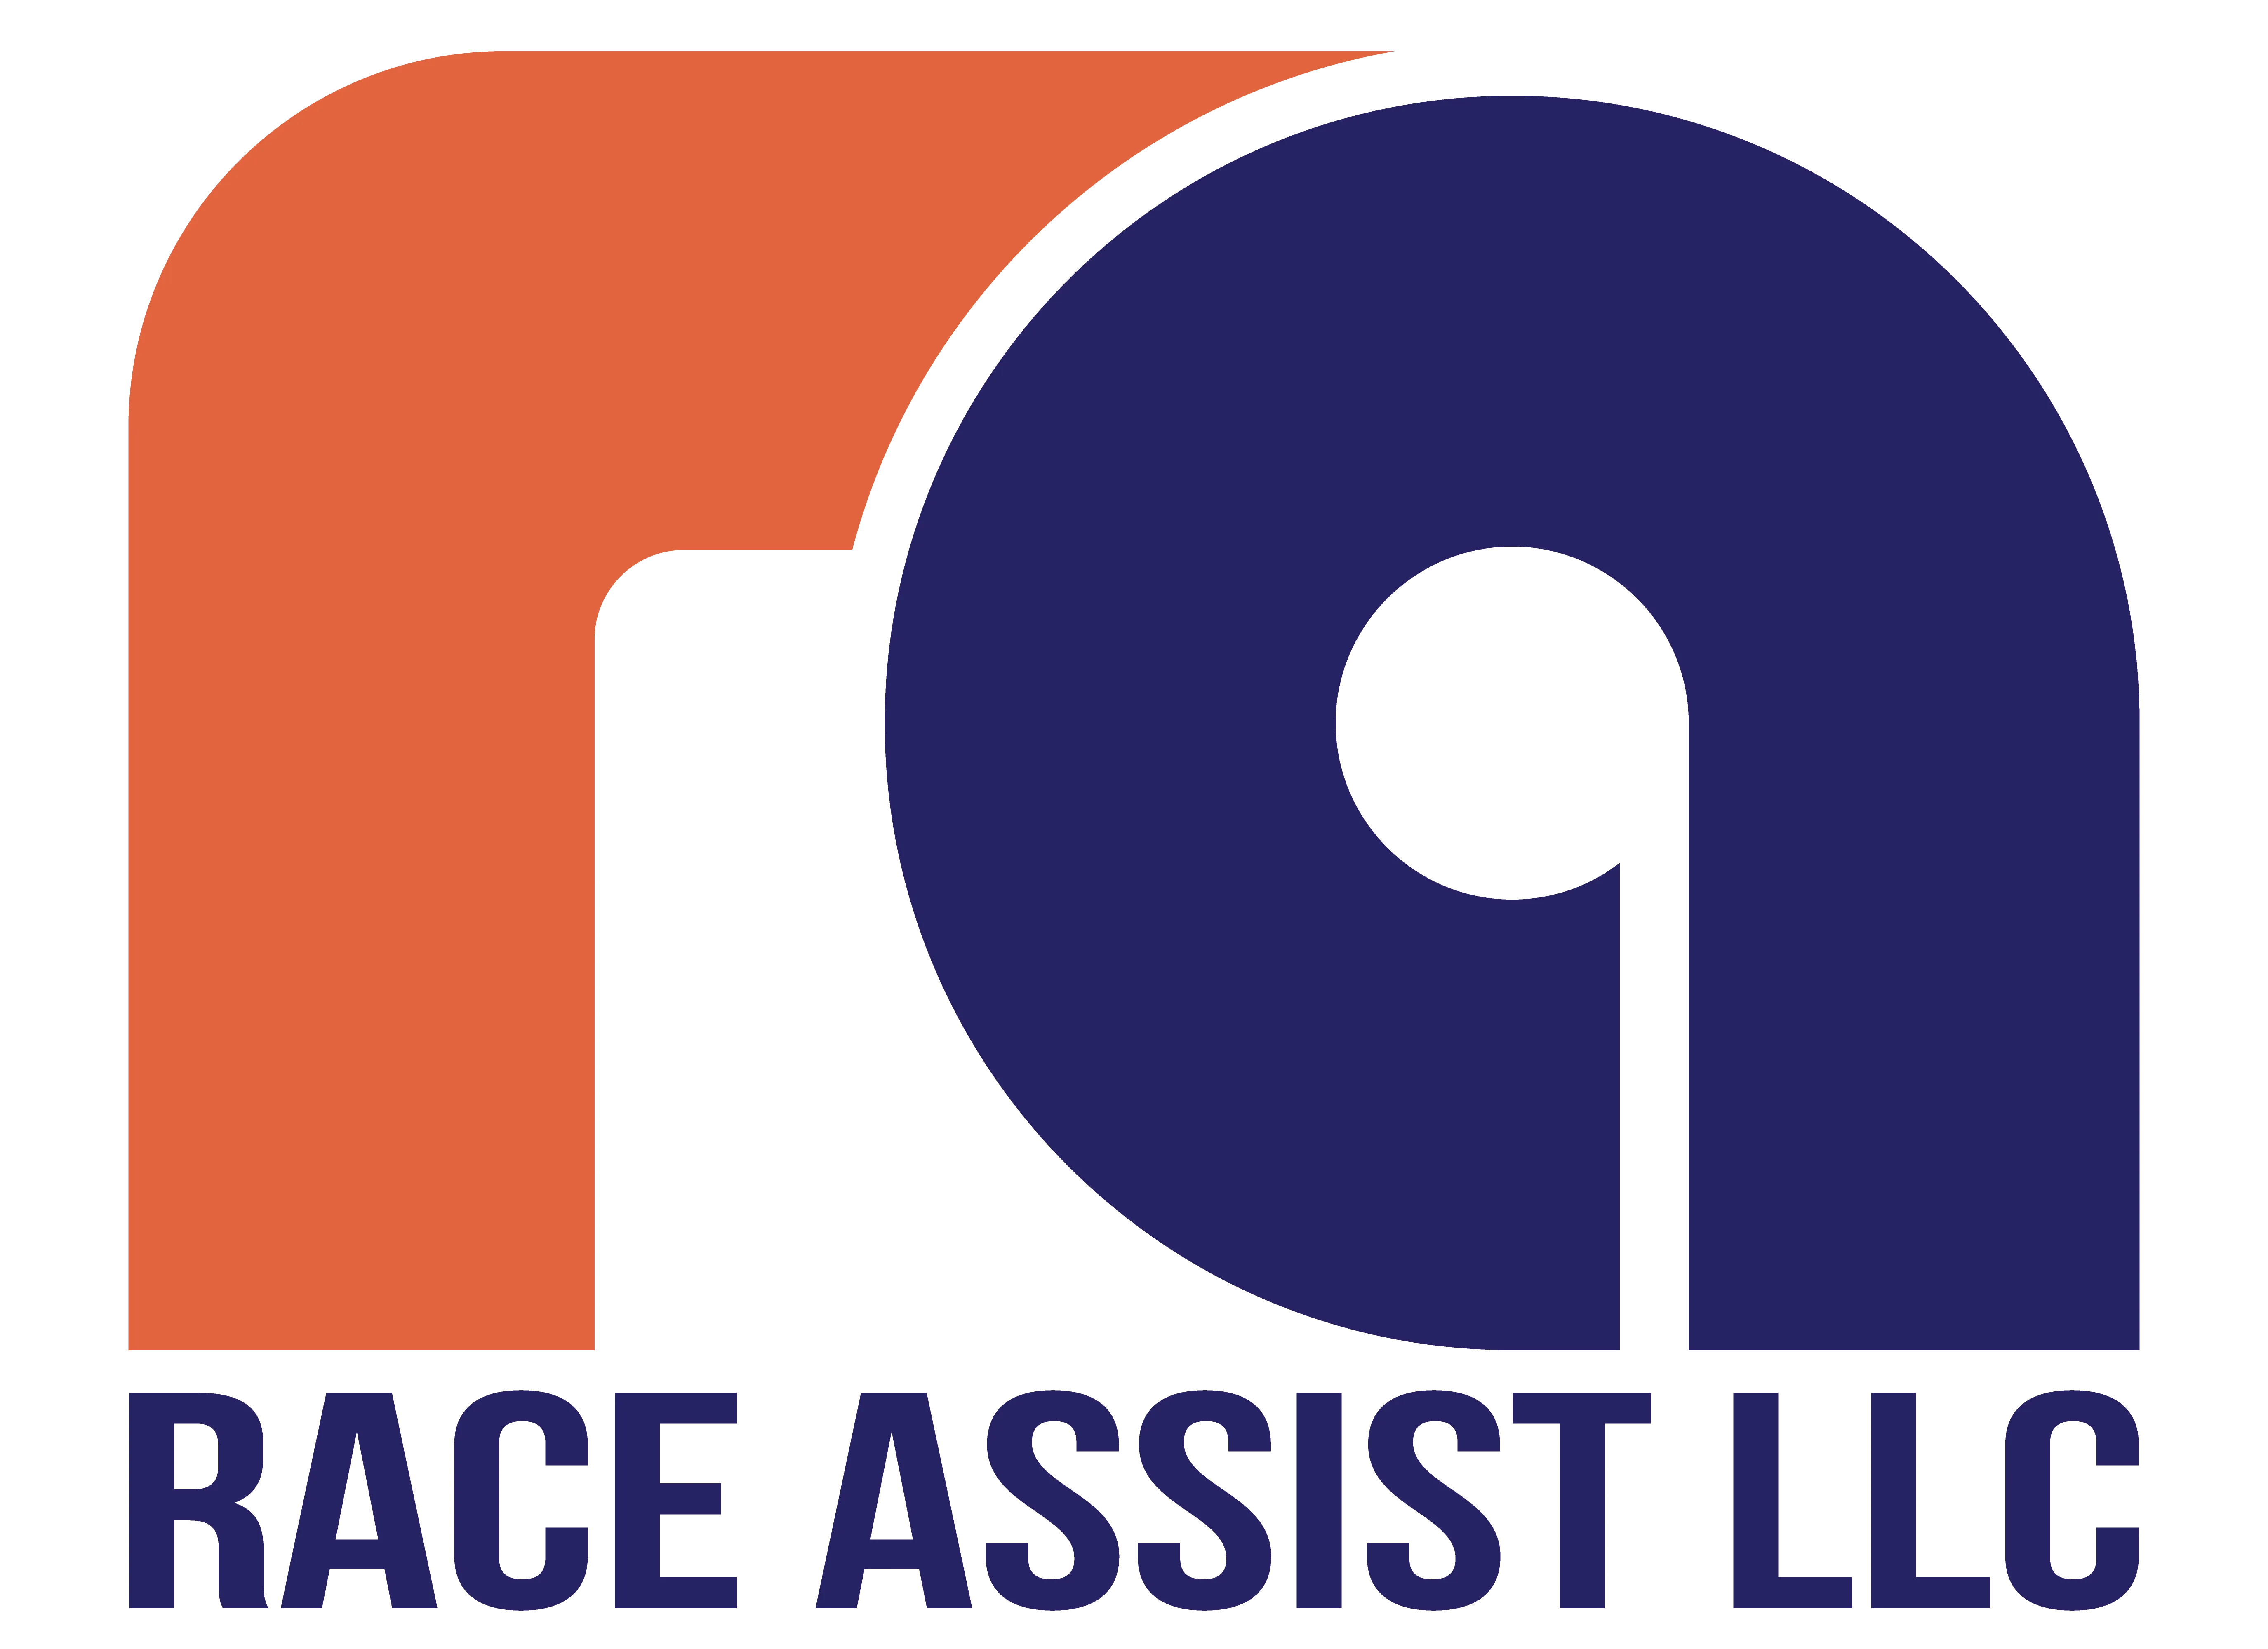 Race Assist LLC